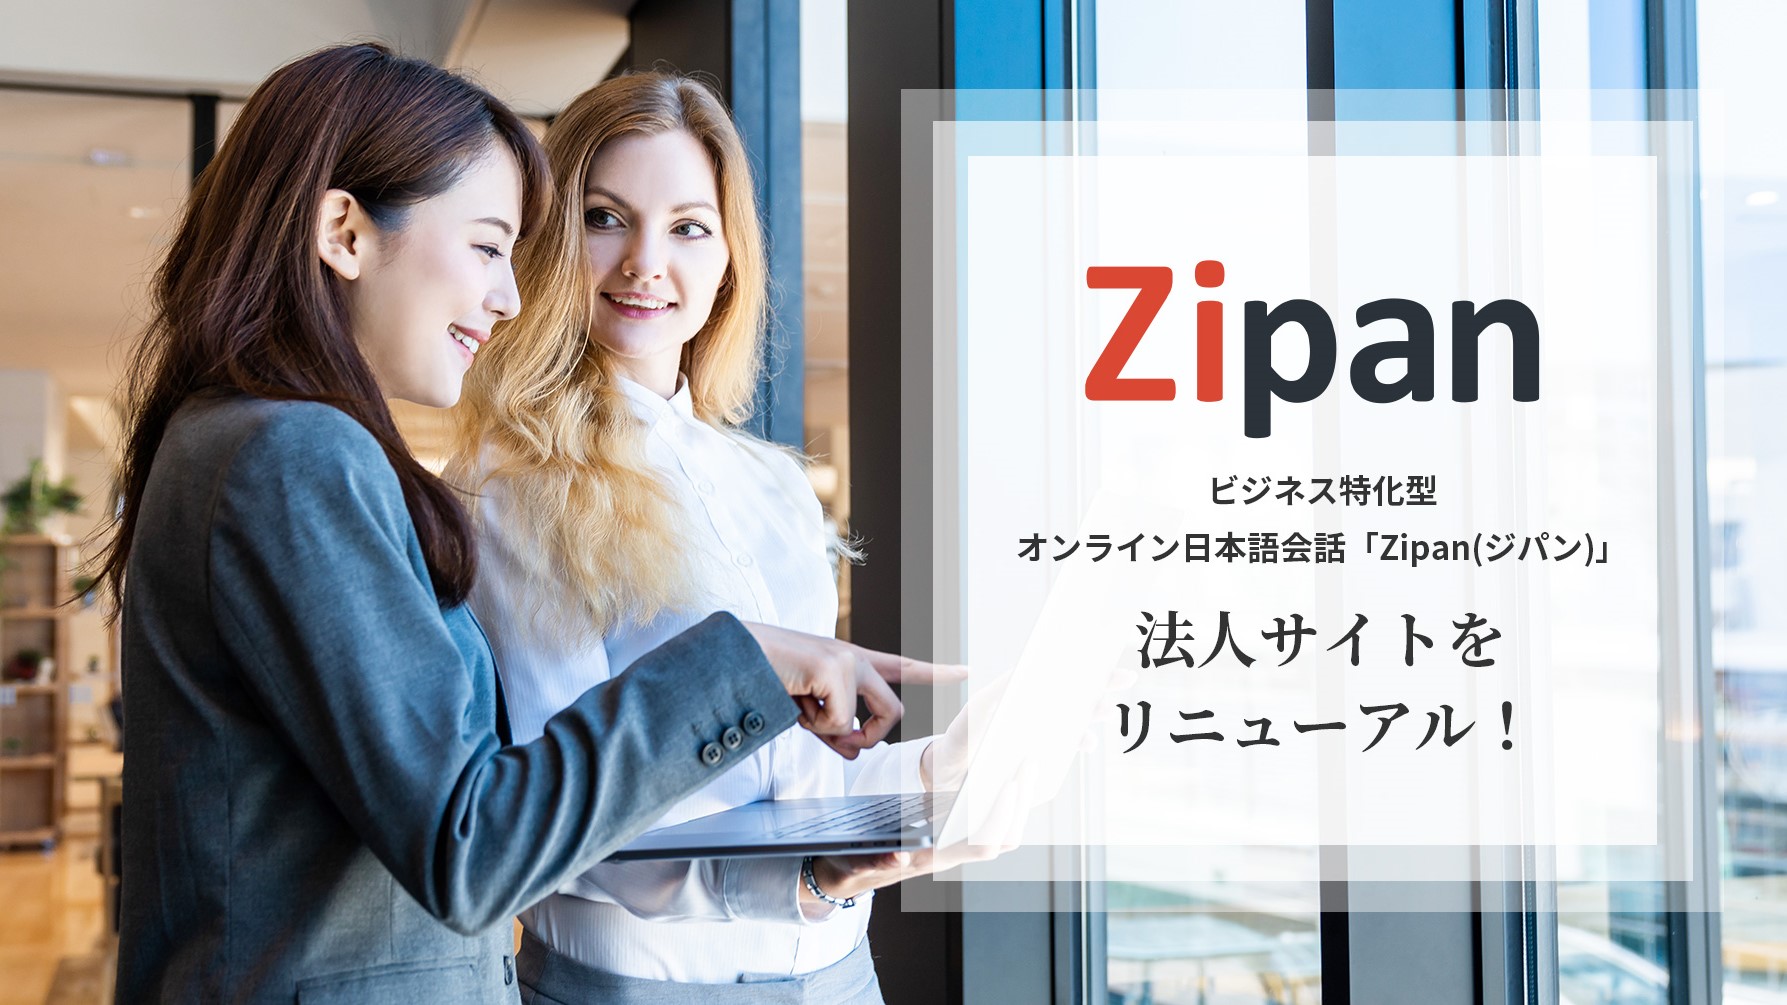 「Zipan(ジパン)」、法人サイトをリニューアル